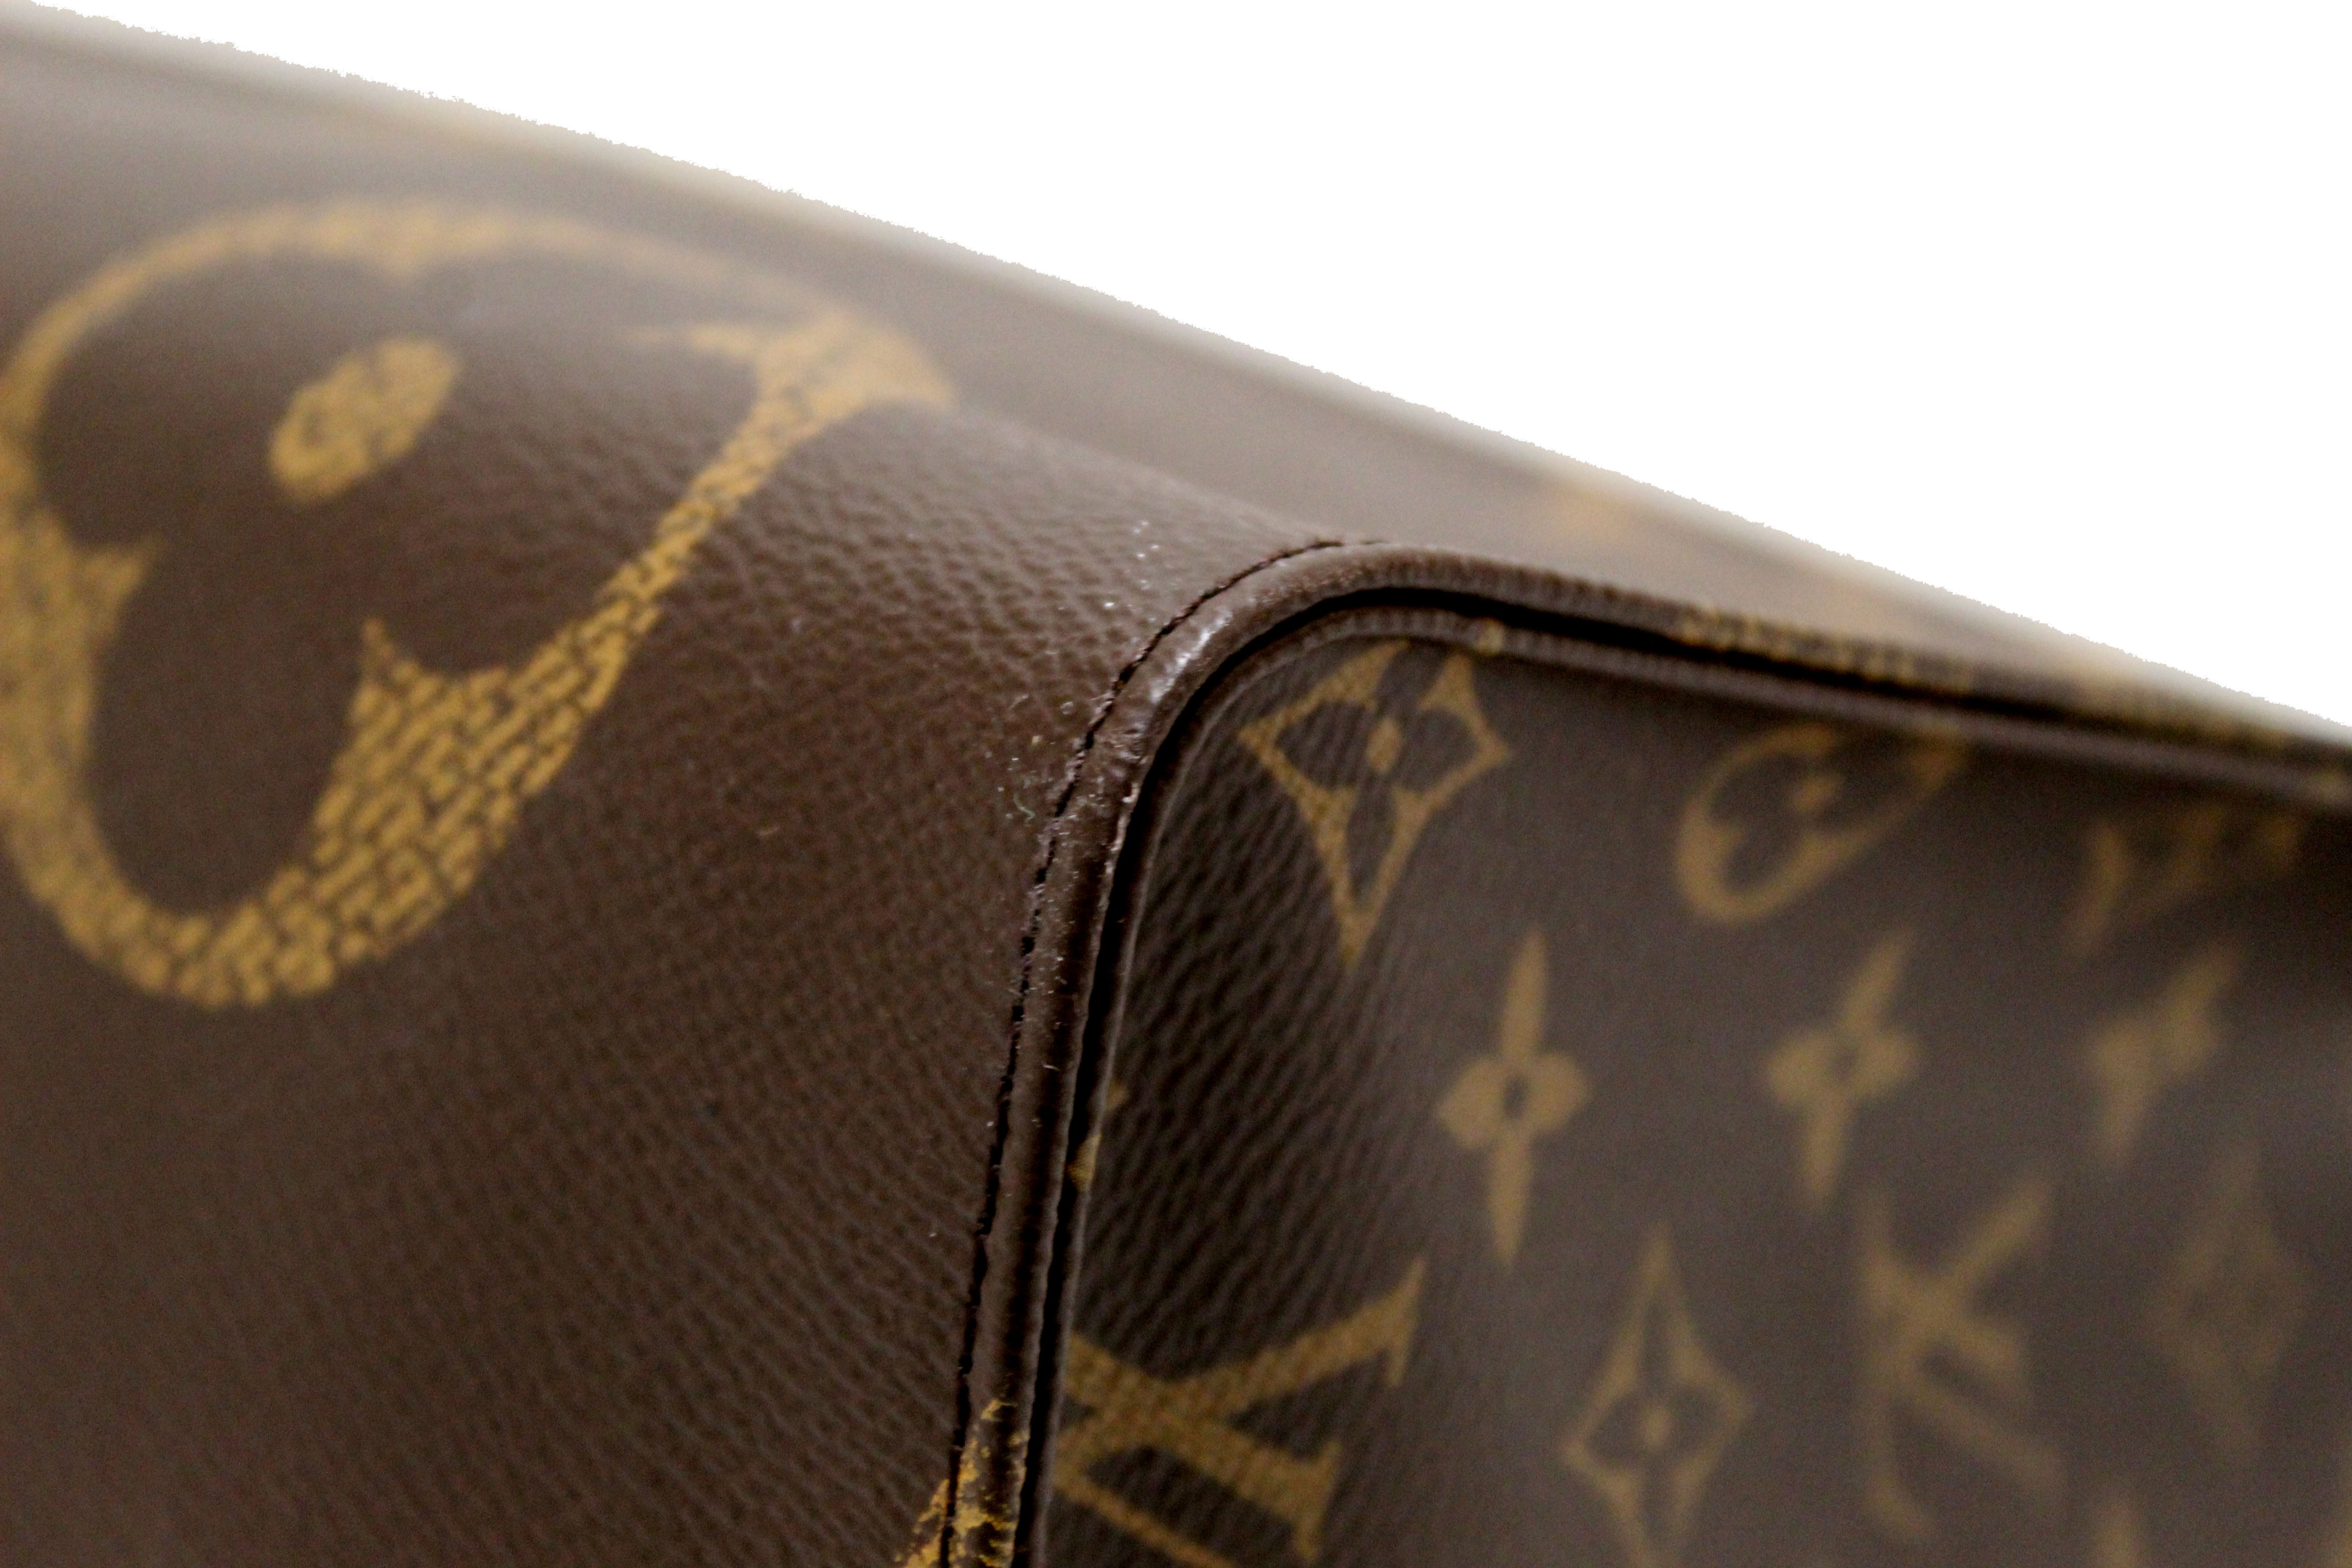 Louis Vuitton, Bags, Authentic Louis Vuitton Gm